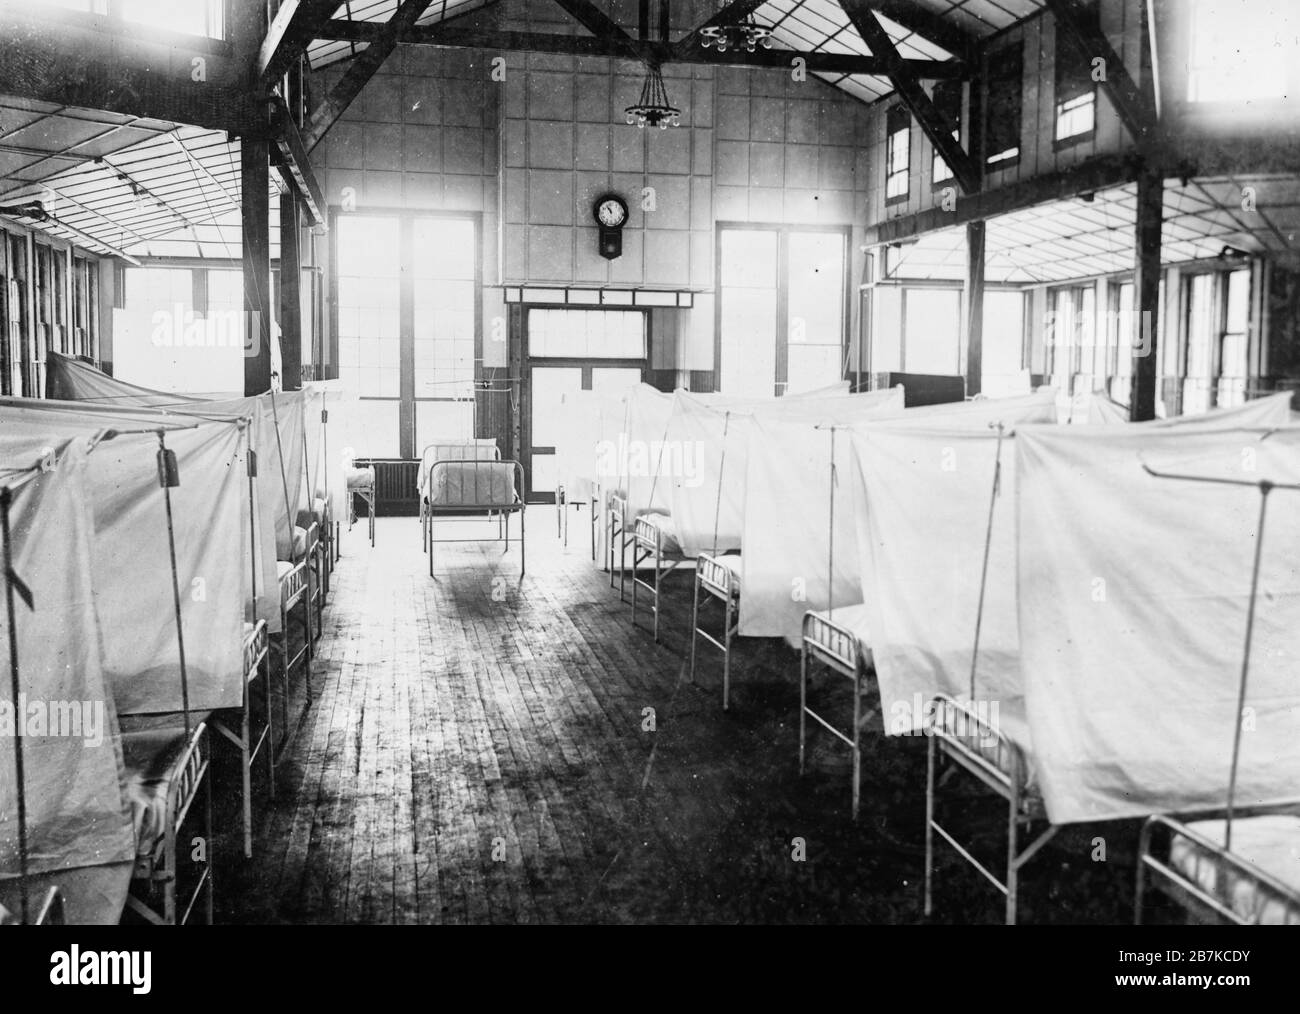 L'intérieur de la Maison de la Croix-Rouge à l'hôpital général des États-Unis n° 16, New Haven, Connecticut pendant l'épidémie de grippe. Les lits sont isolés par des rideaux, vers 1918 Banque D'Images